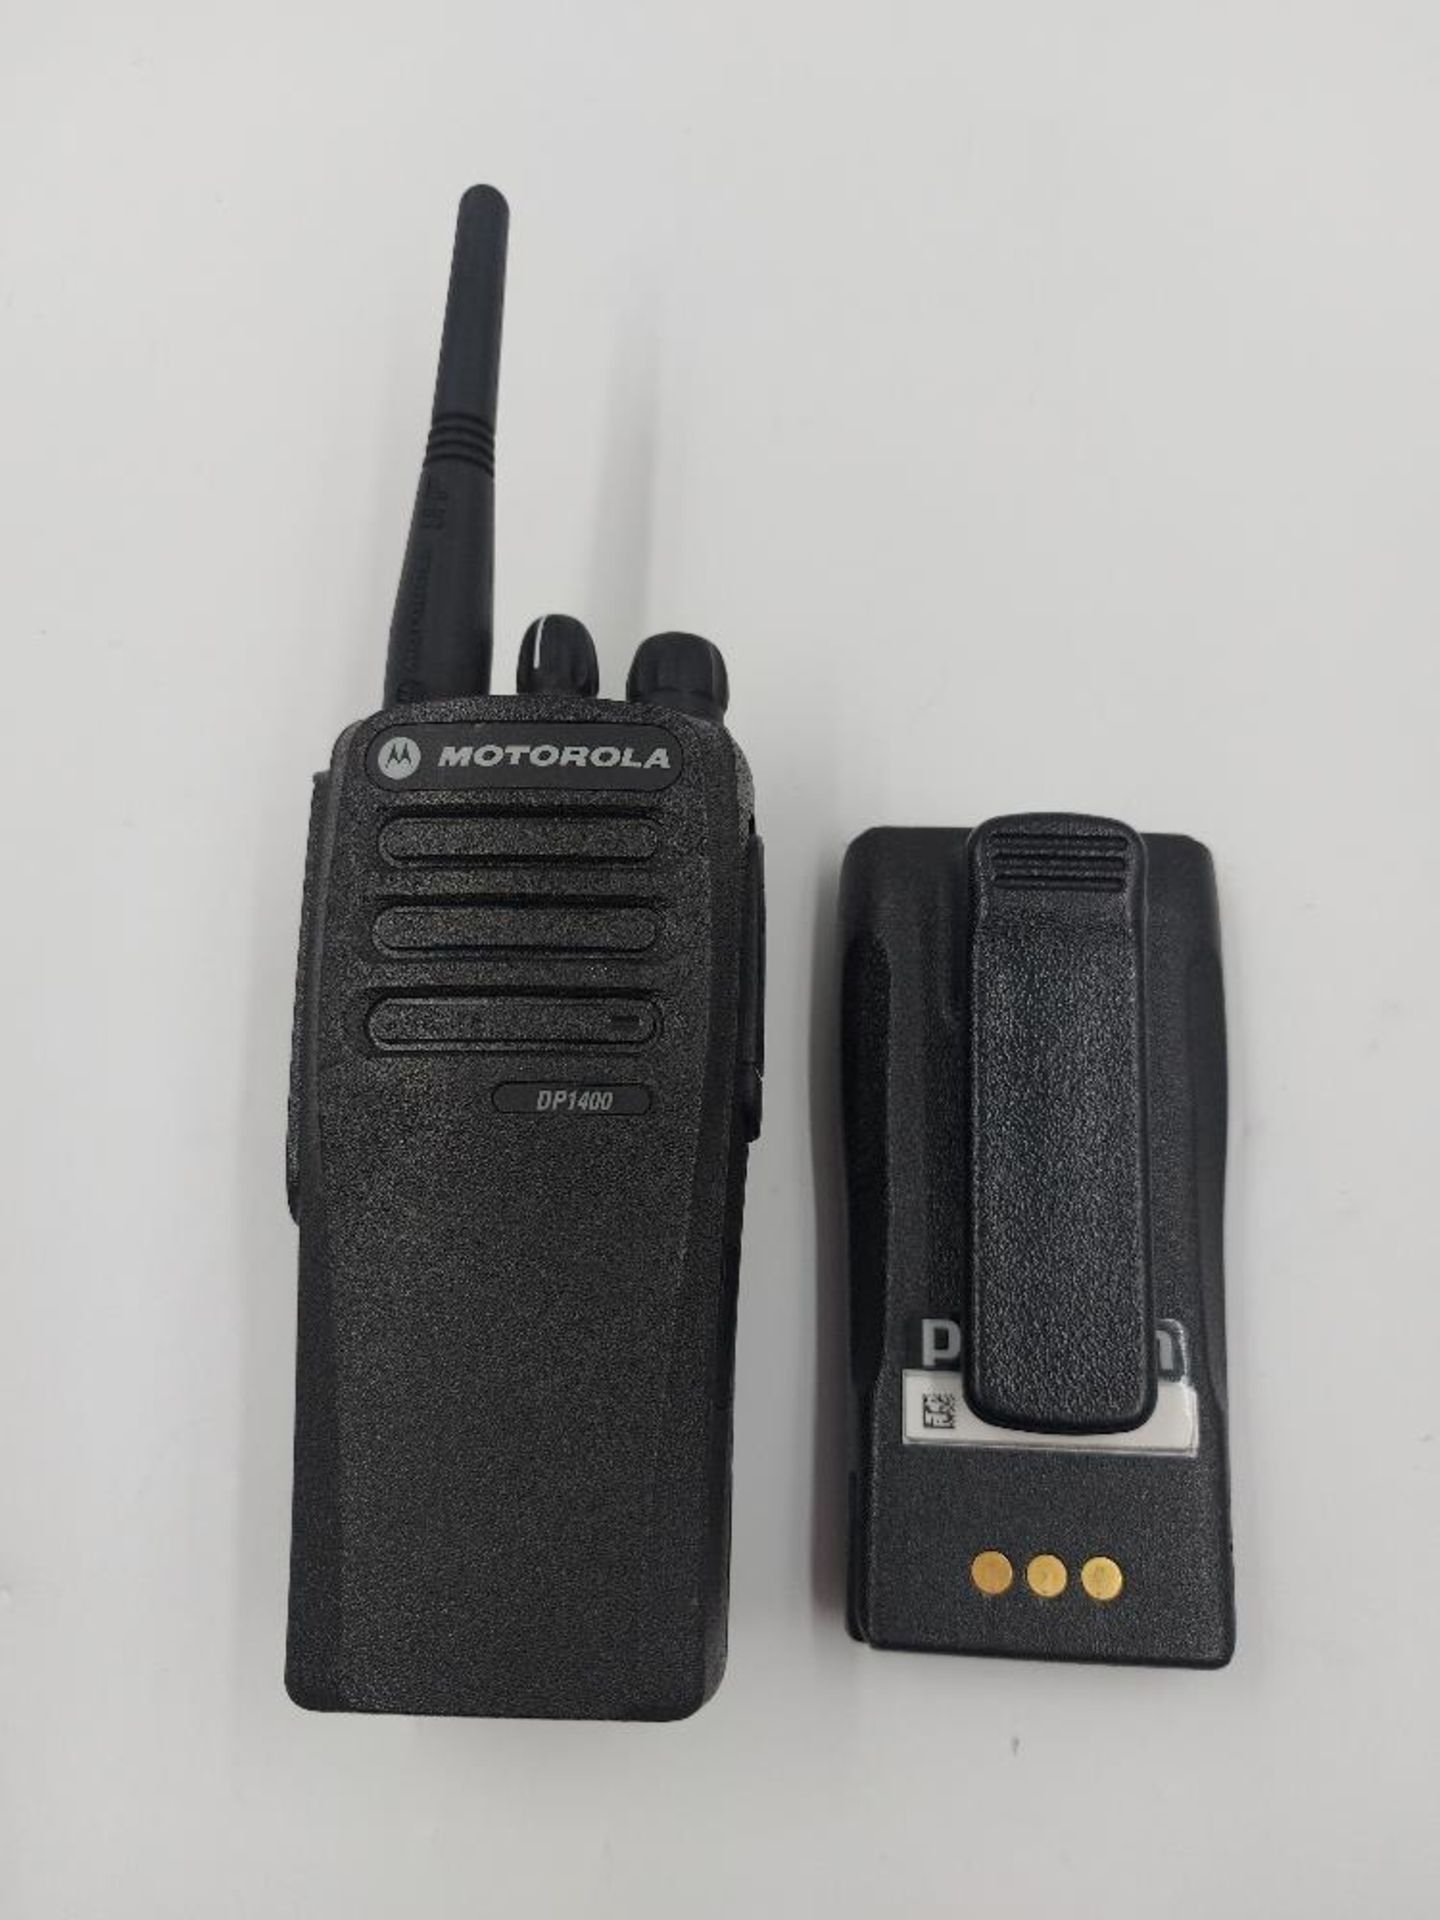 Motorola Walkie Talkie DP1400 Kit - Image 2 of 7